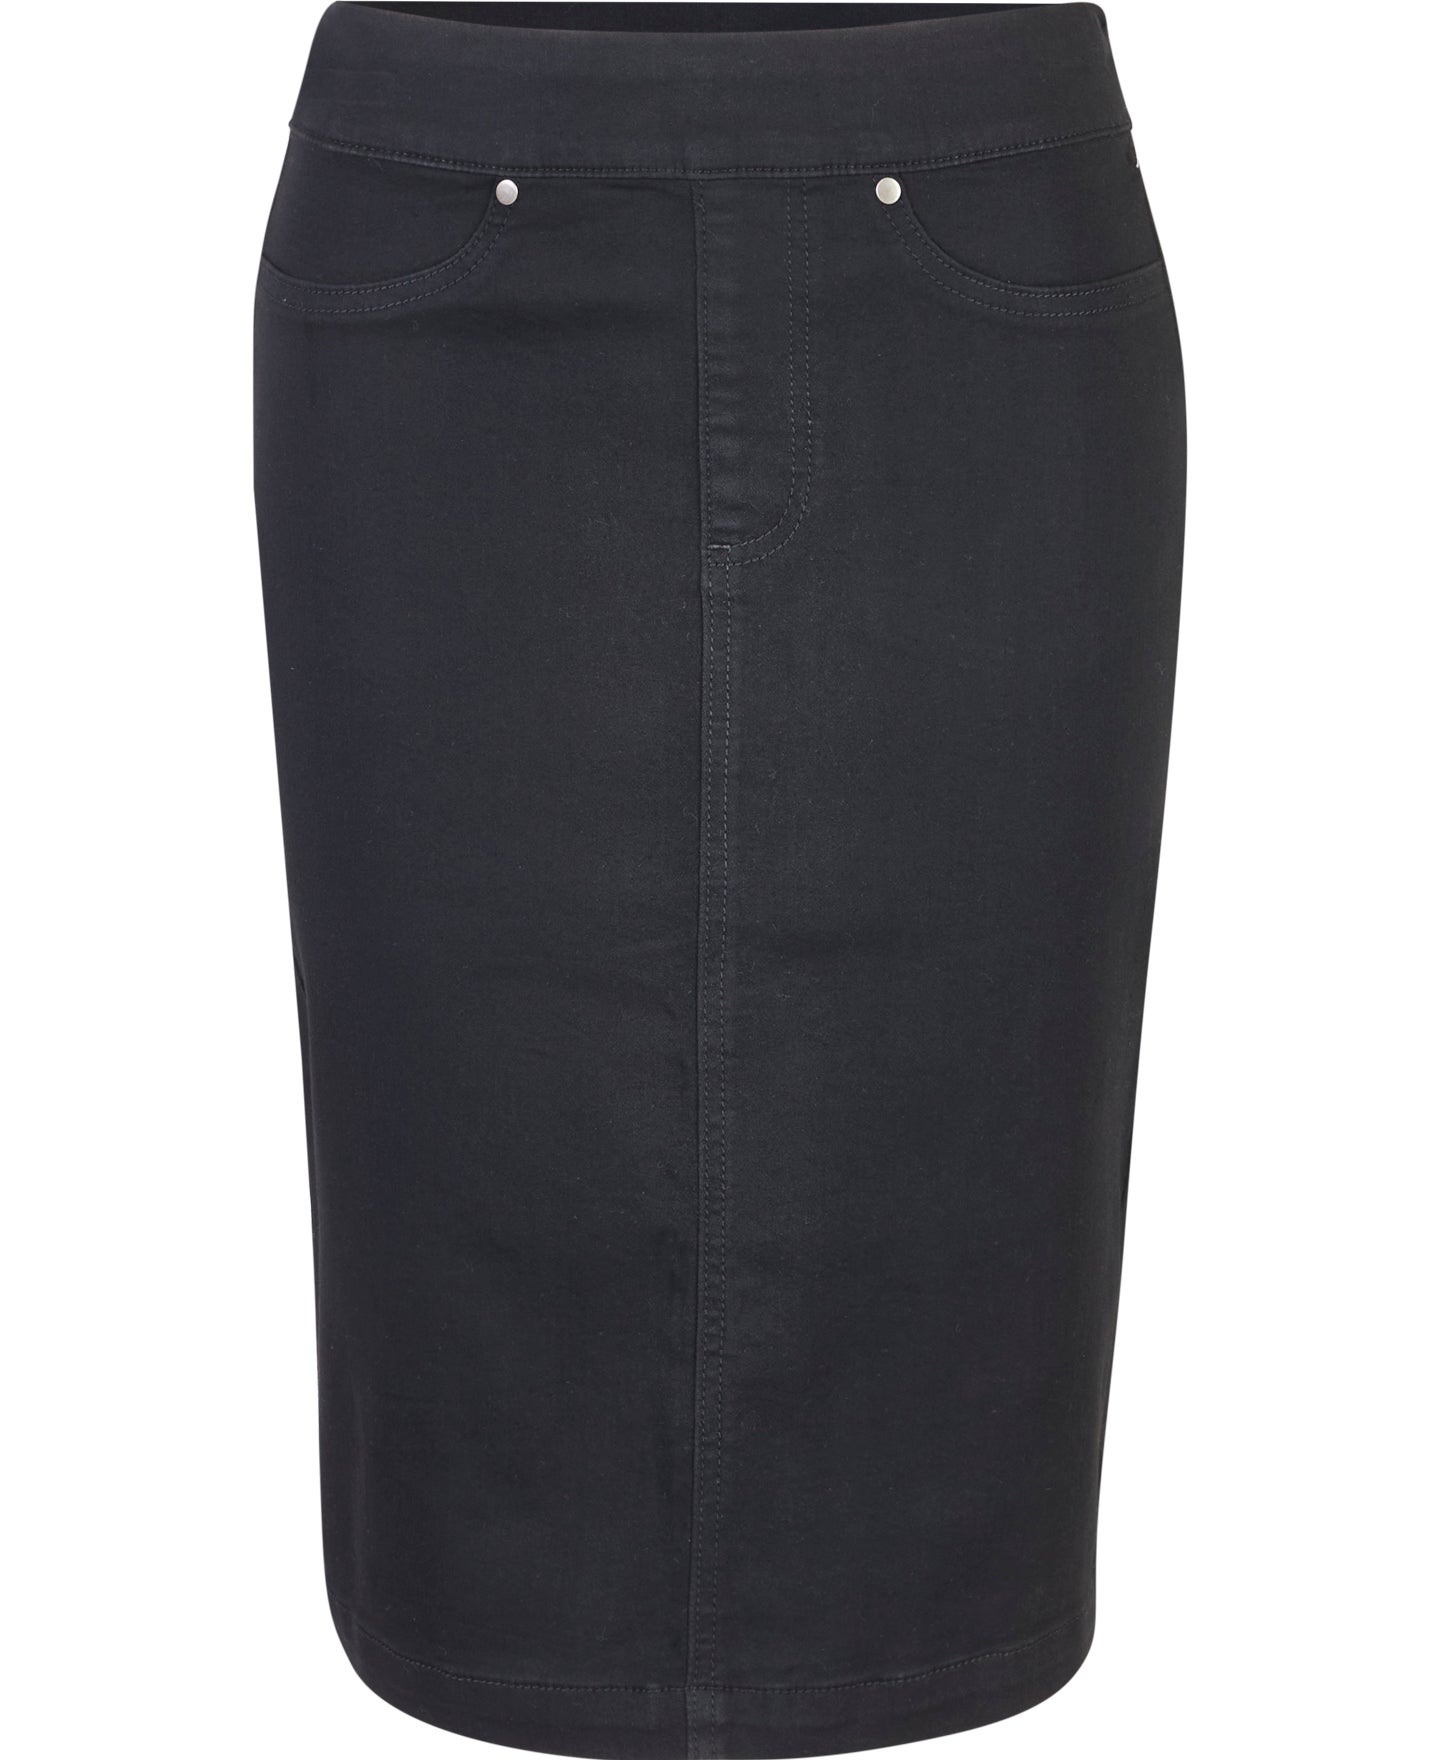 Black Front Denim Zip Skirt | Denim | Denim skirt, Skirts, Skirt outfits